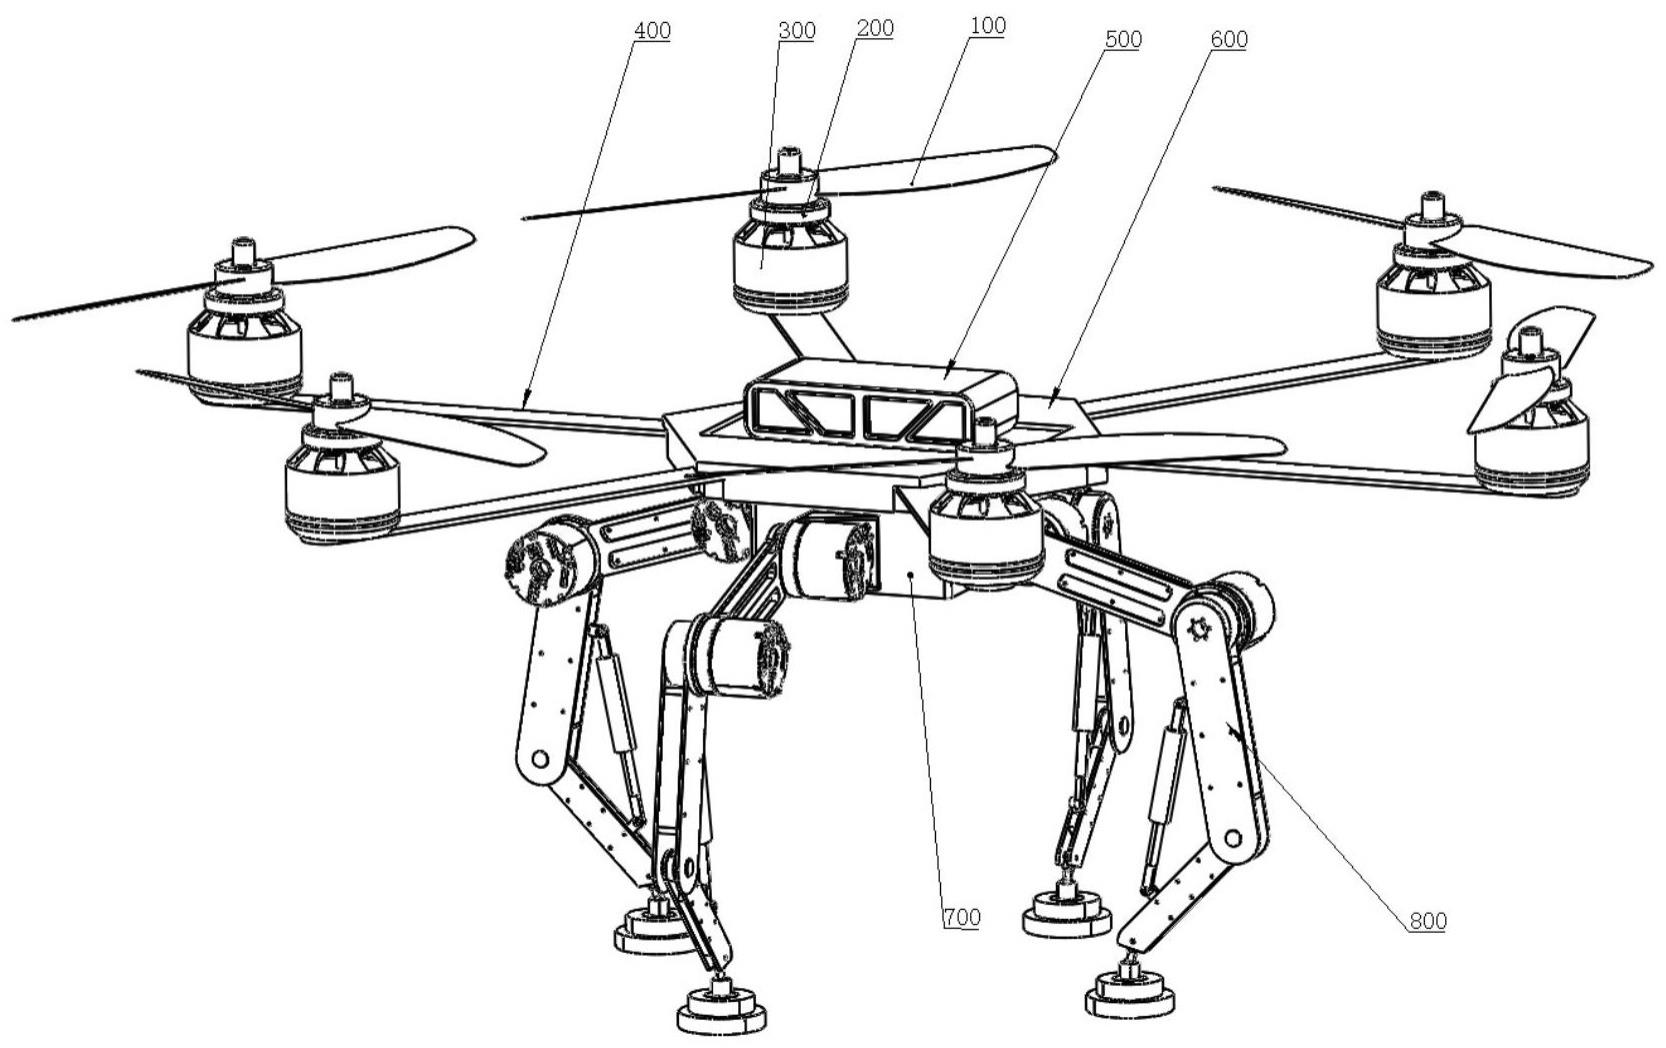 一种髋膝可驱动仿生着陆腿式六旋翼无人机及其控制方法